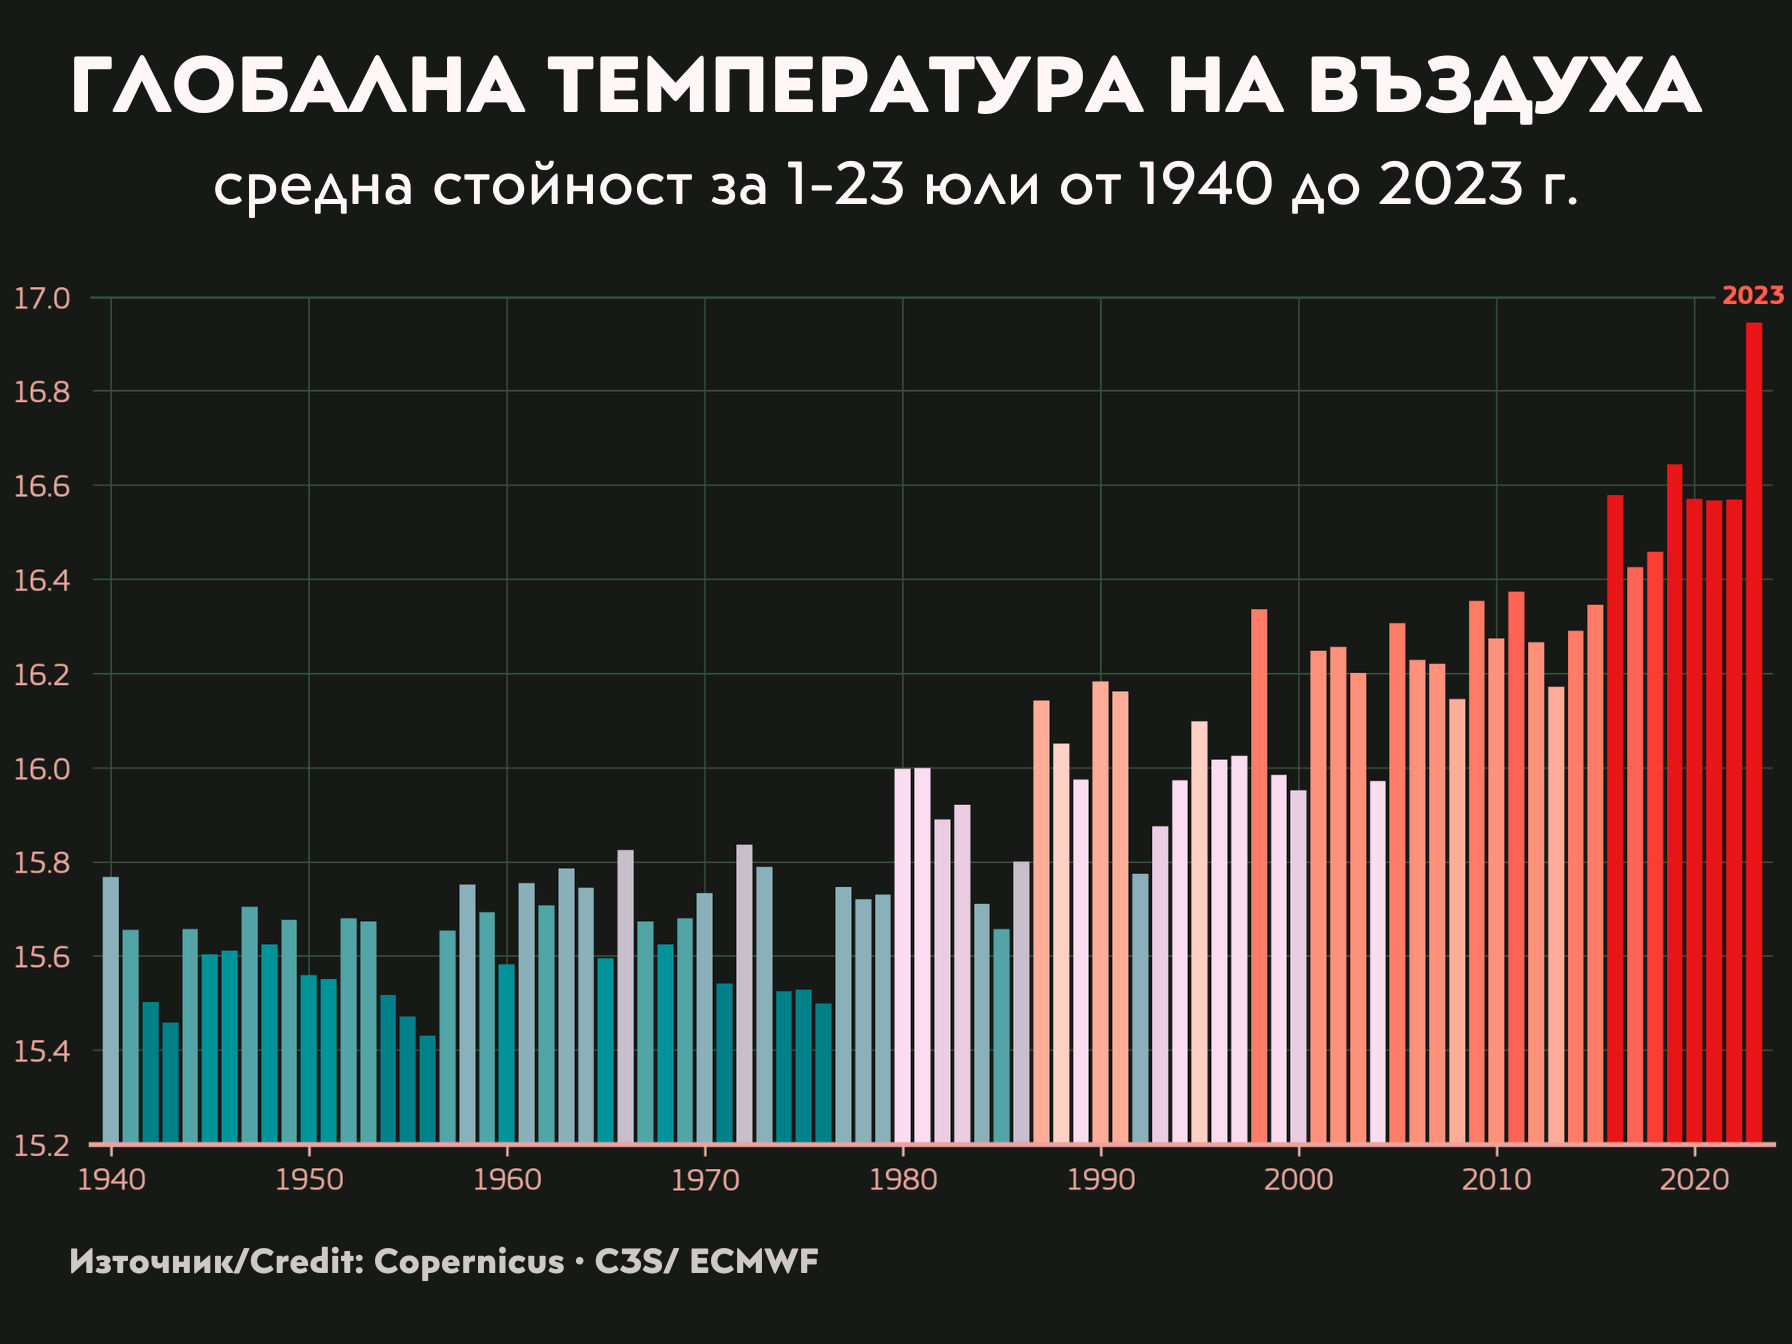 Графика с температурите през юли през годините